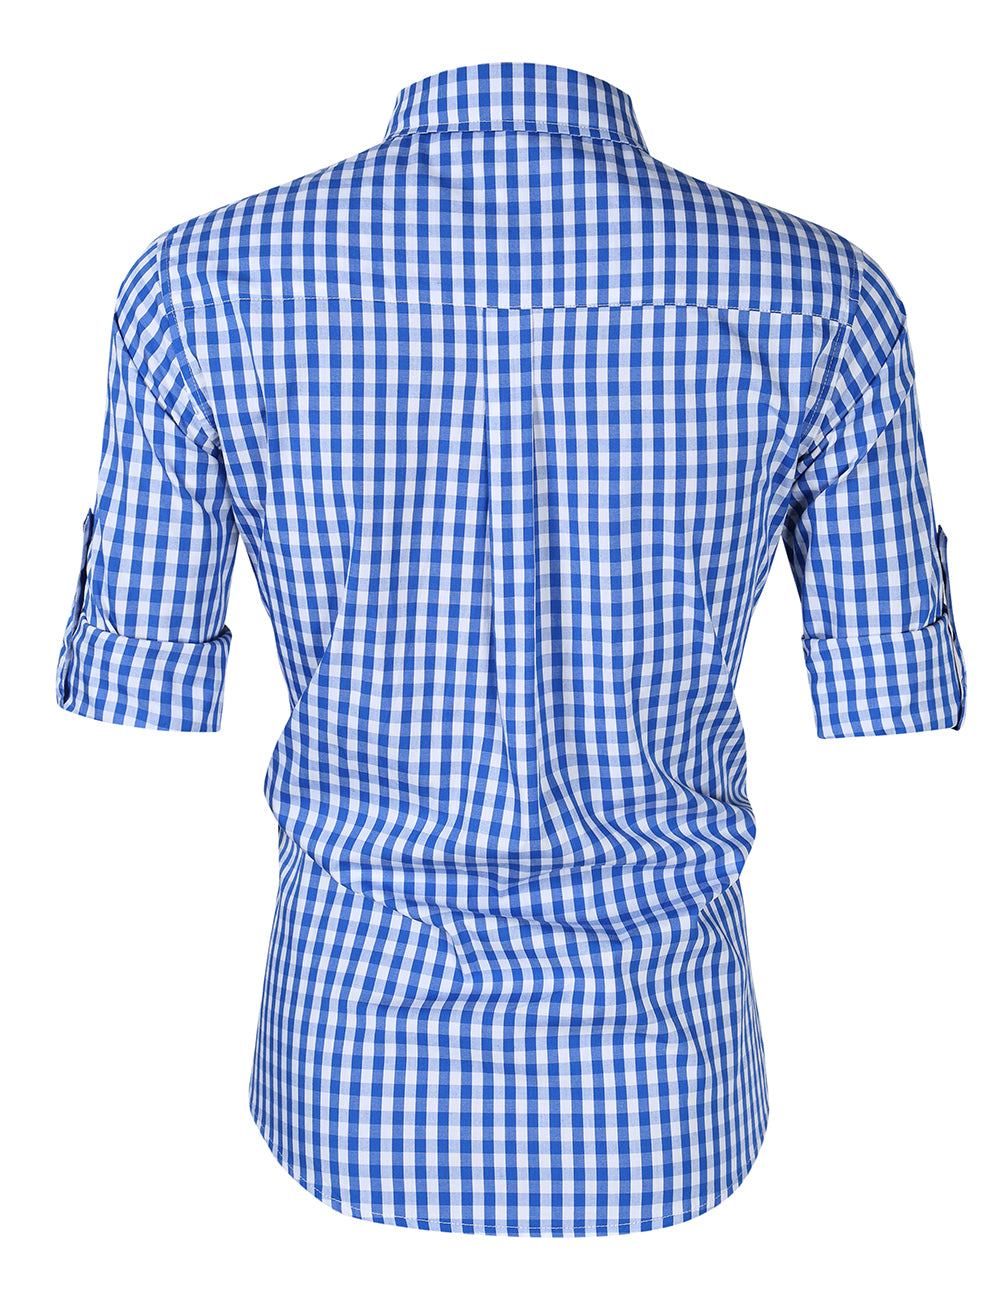 WIESNFASHION Männer Oktoberfest Kostüme Langarmhemd Mode Plaid Fronttasche Klassisches Hemd Tops